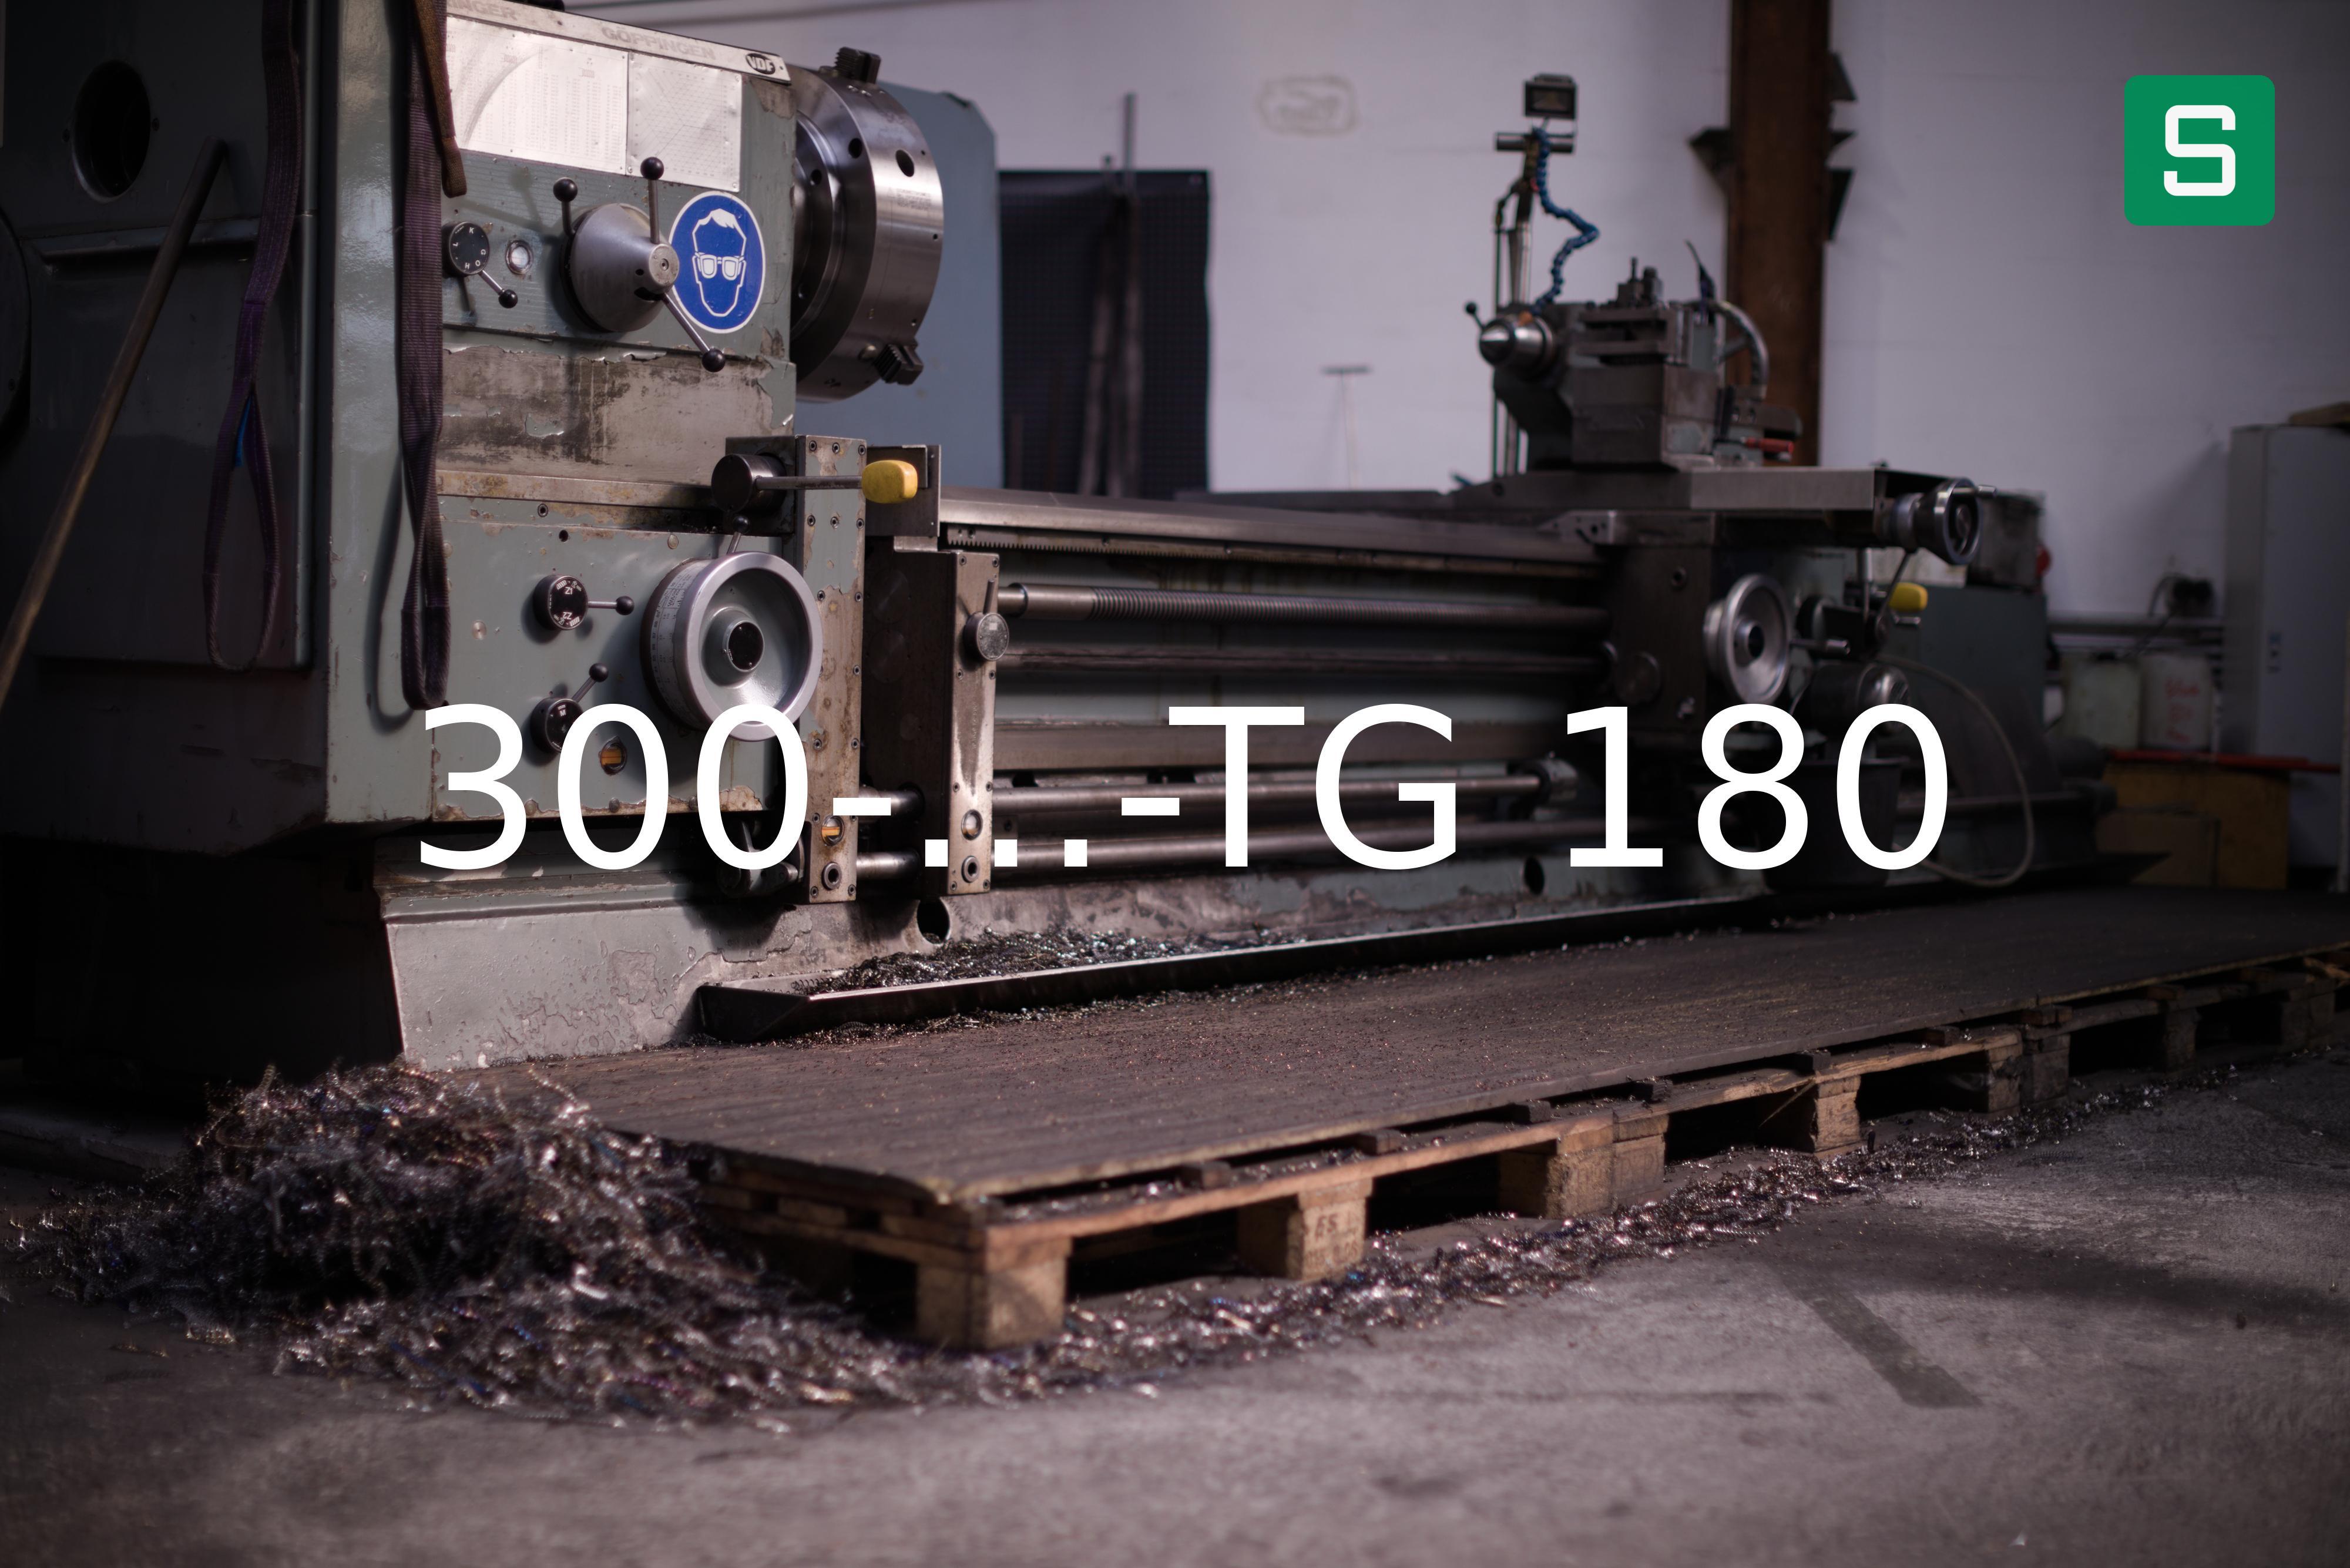 Steel Material: 300-...-TG 180